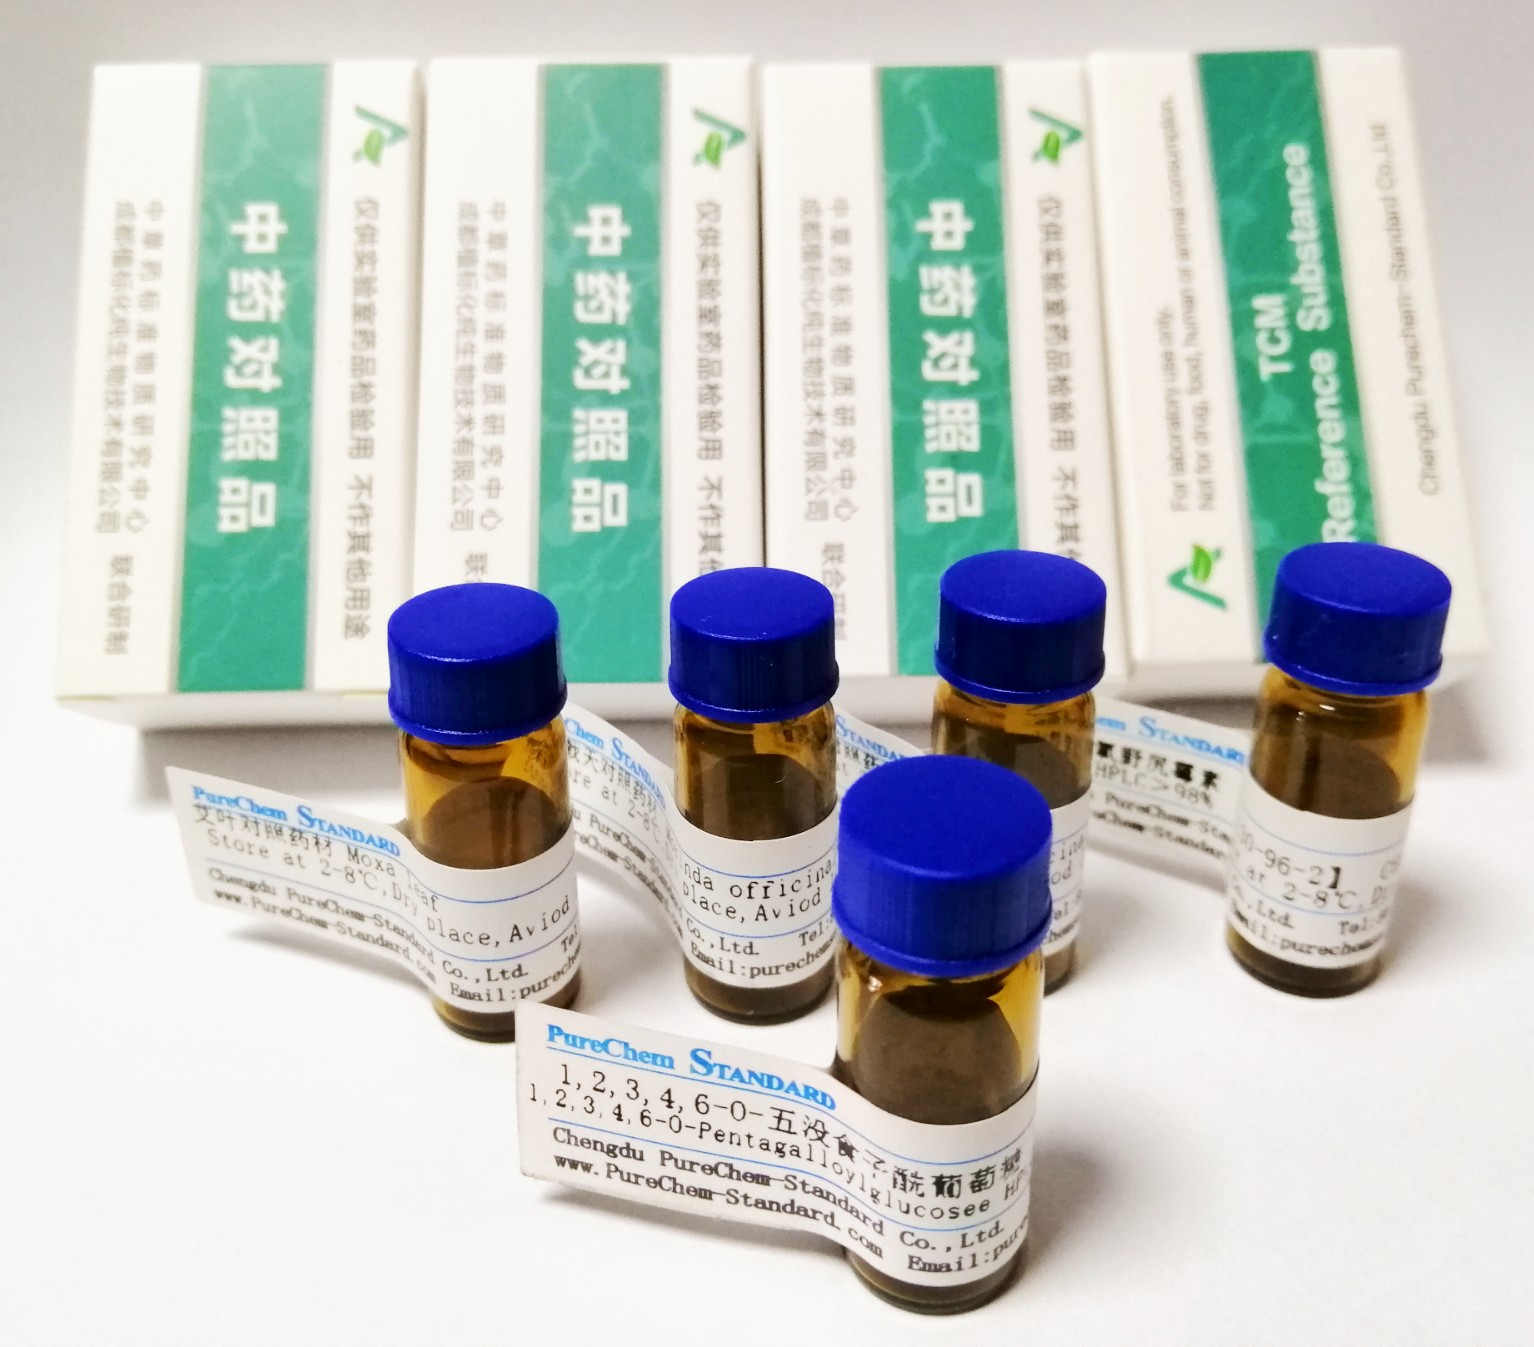 仙茅苷丙 851713-74-1 中药对照品中药标准品图片